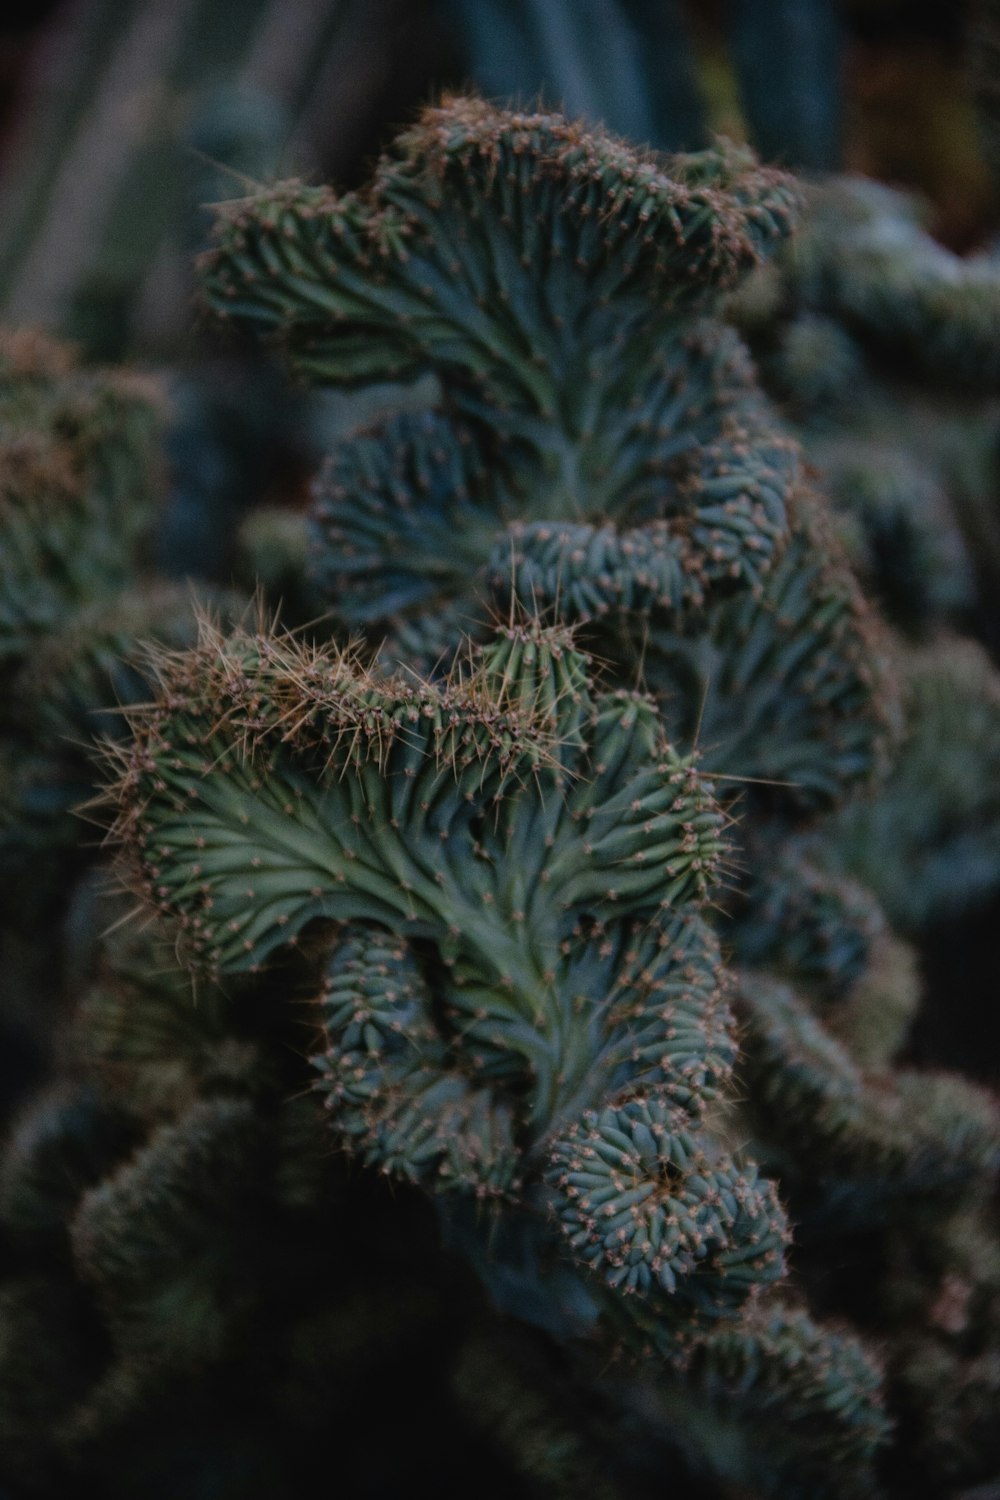 cactus plant close-up photograph